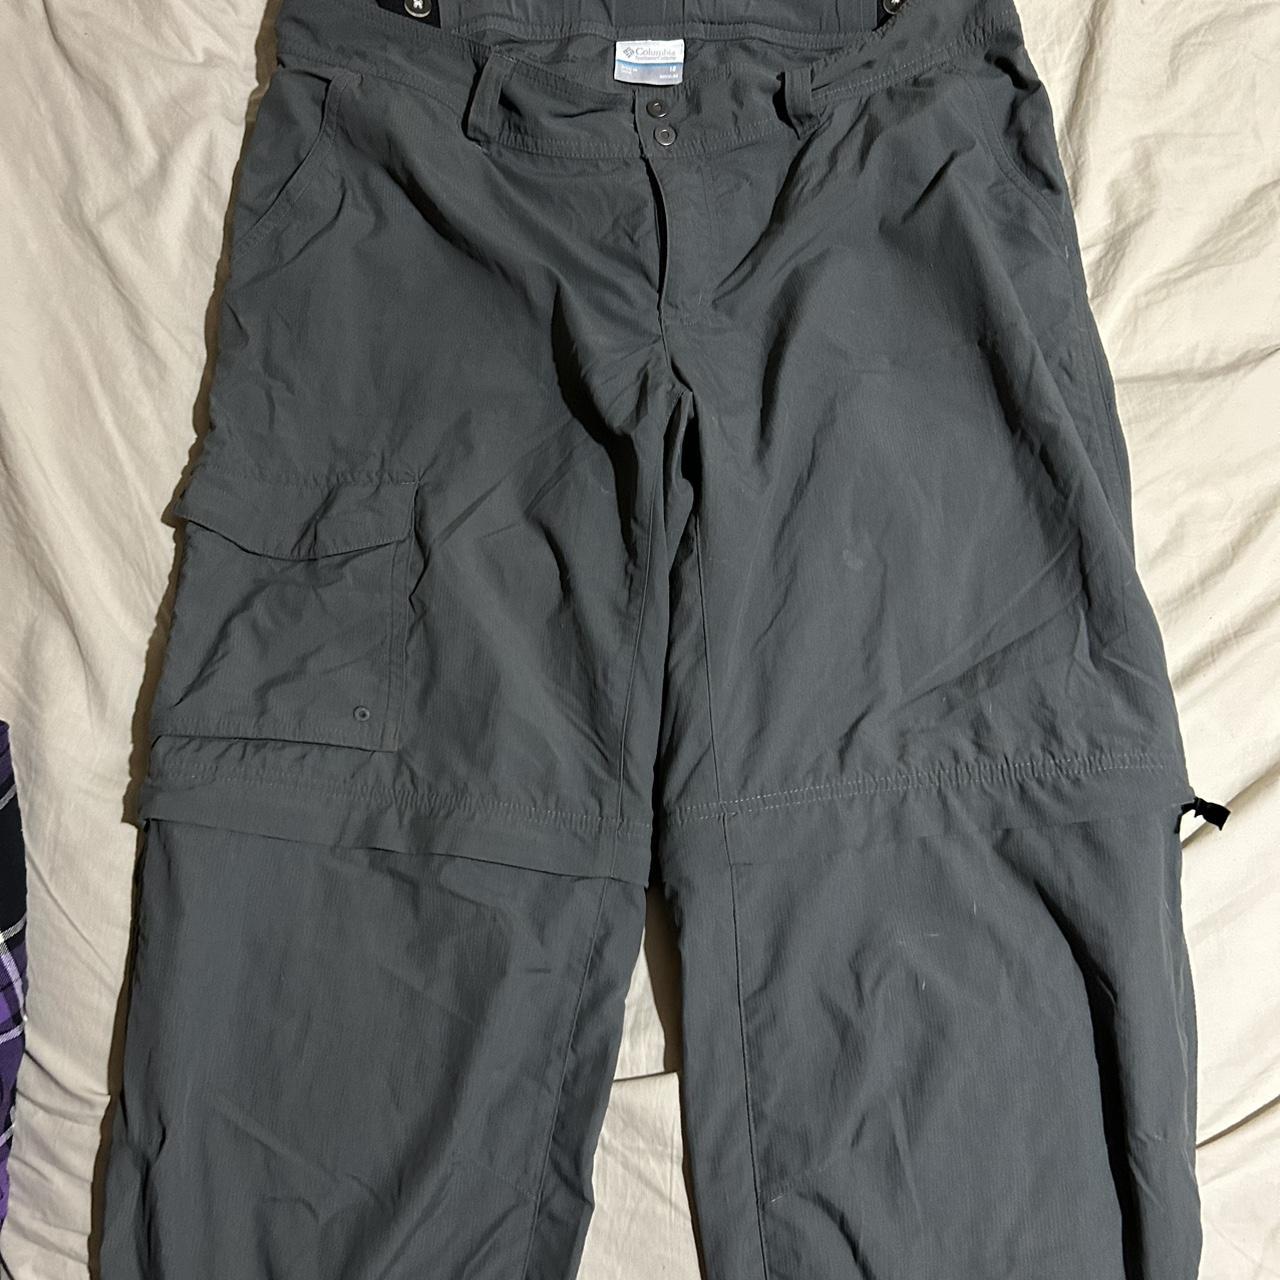 Outdoor 2 in 1 pants zip off to shorts in good... - Depop